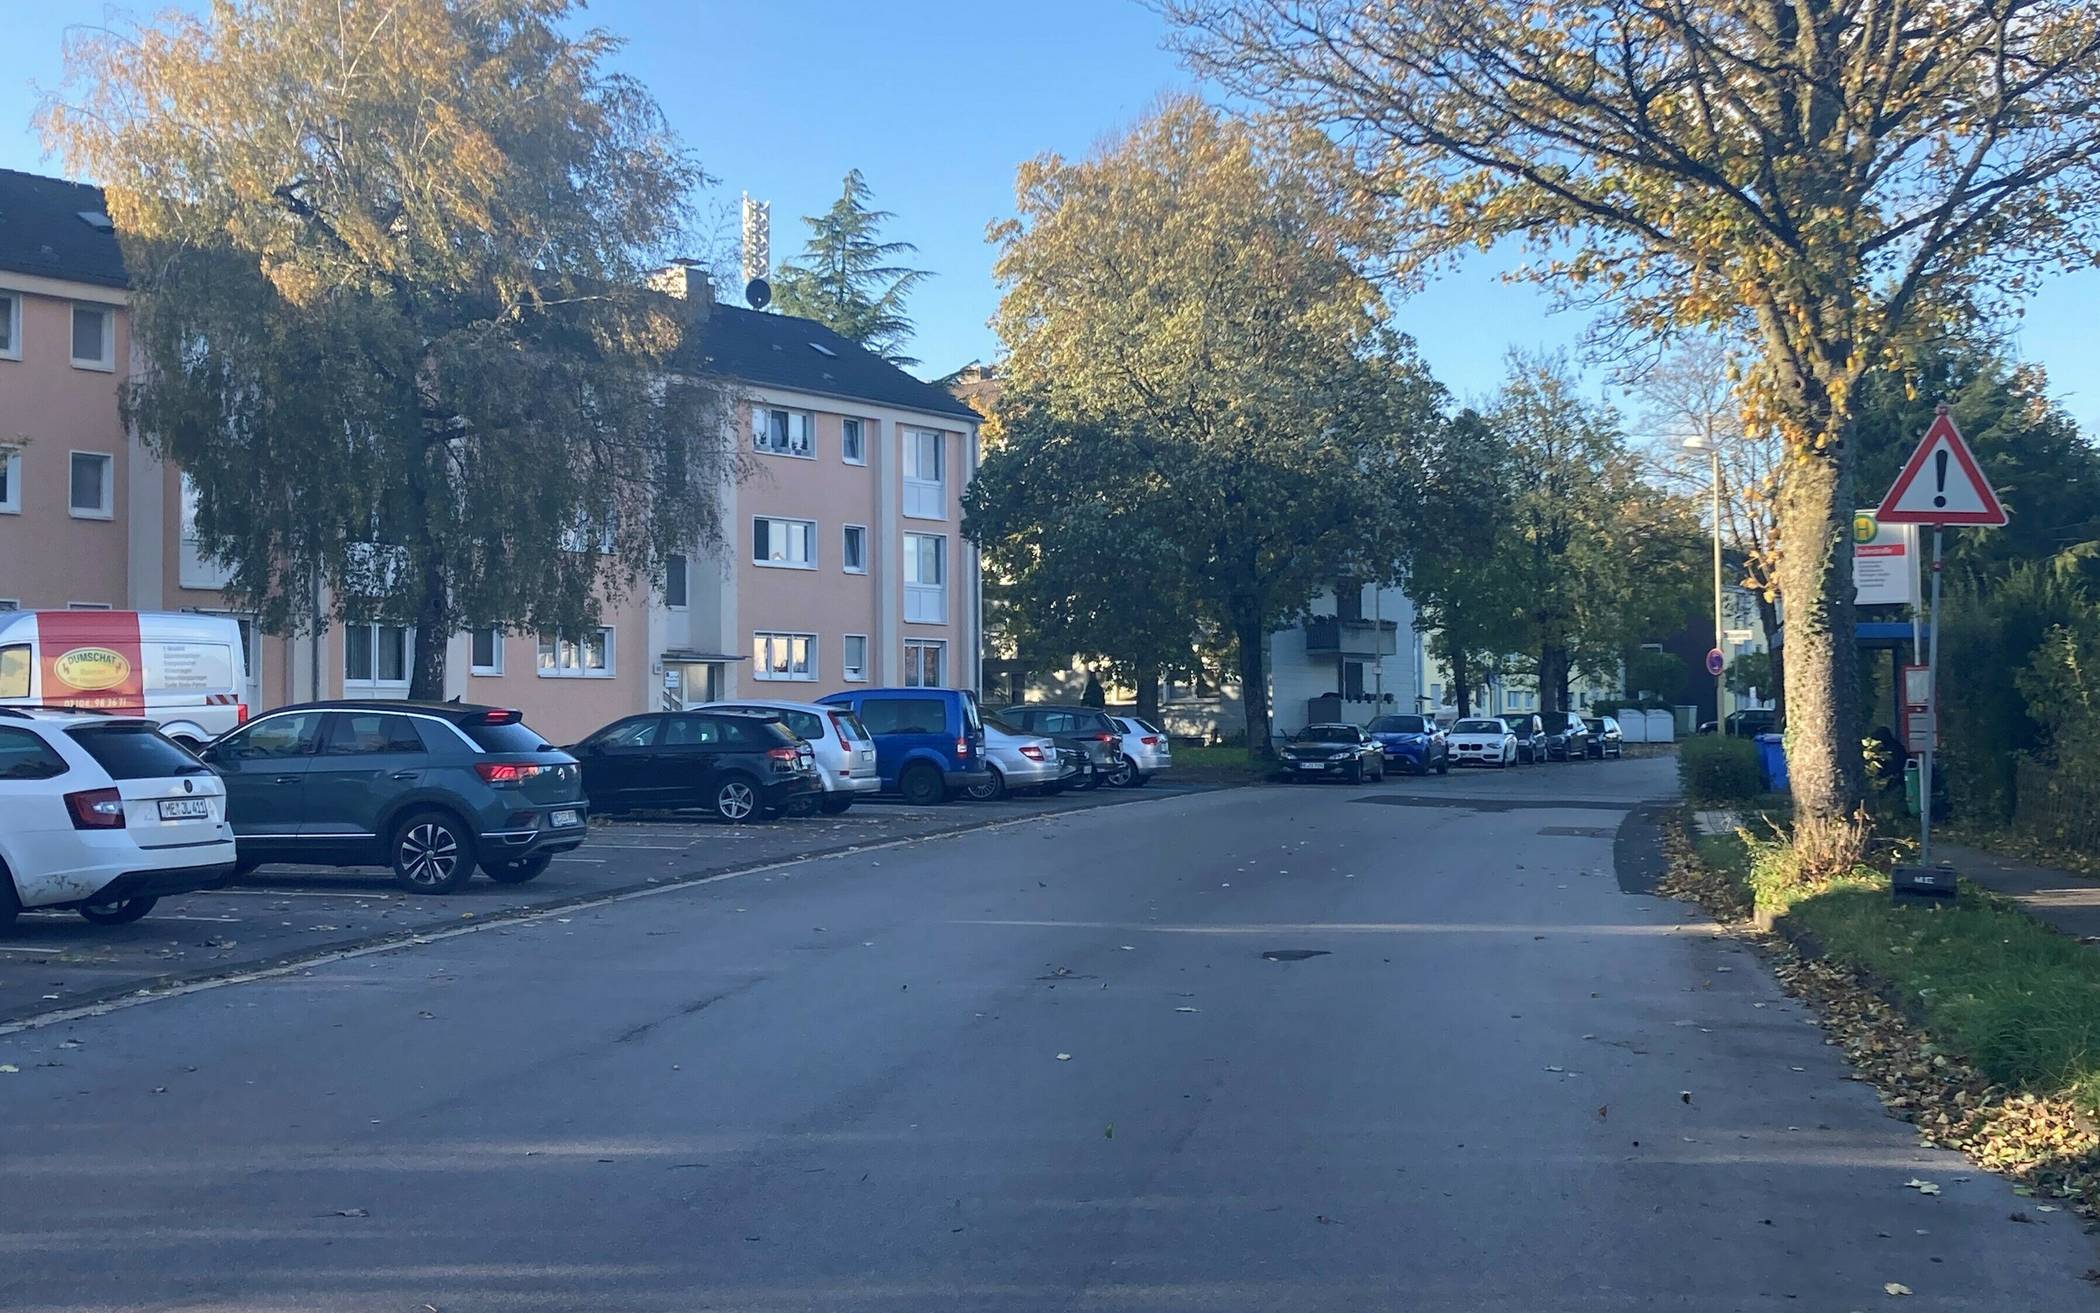  Der Düsselring in Mettmann mit parkenden Autos und Bäumen. 